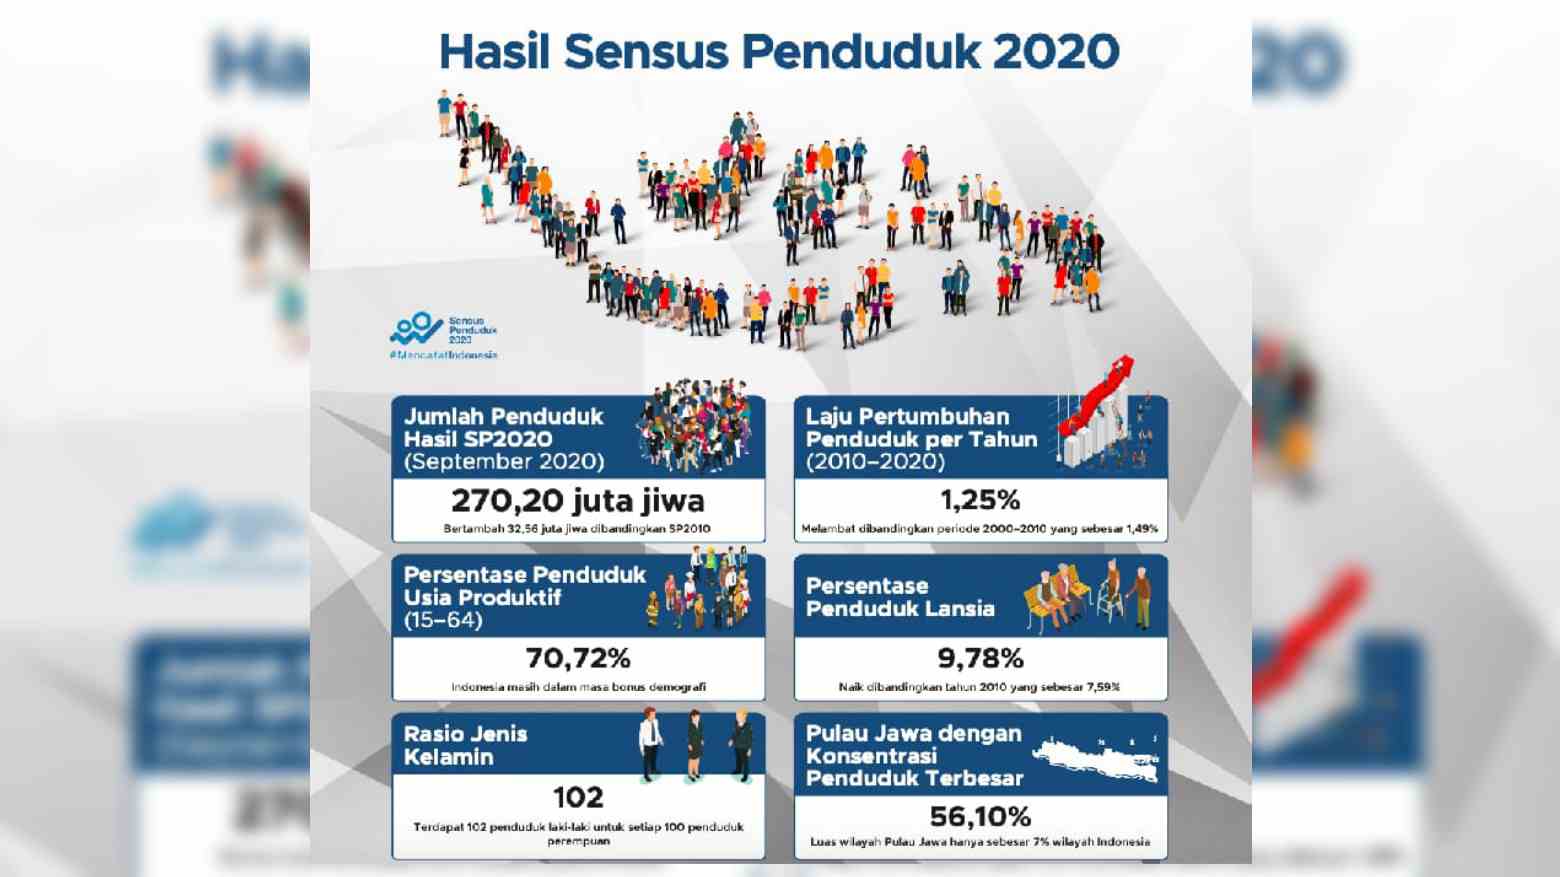 Jumlah Penduduk Indonesia Saat Ini 270,2 Juta Jiwa